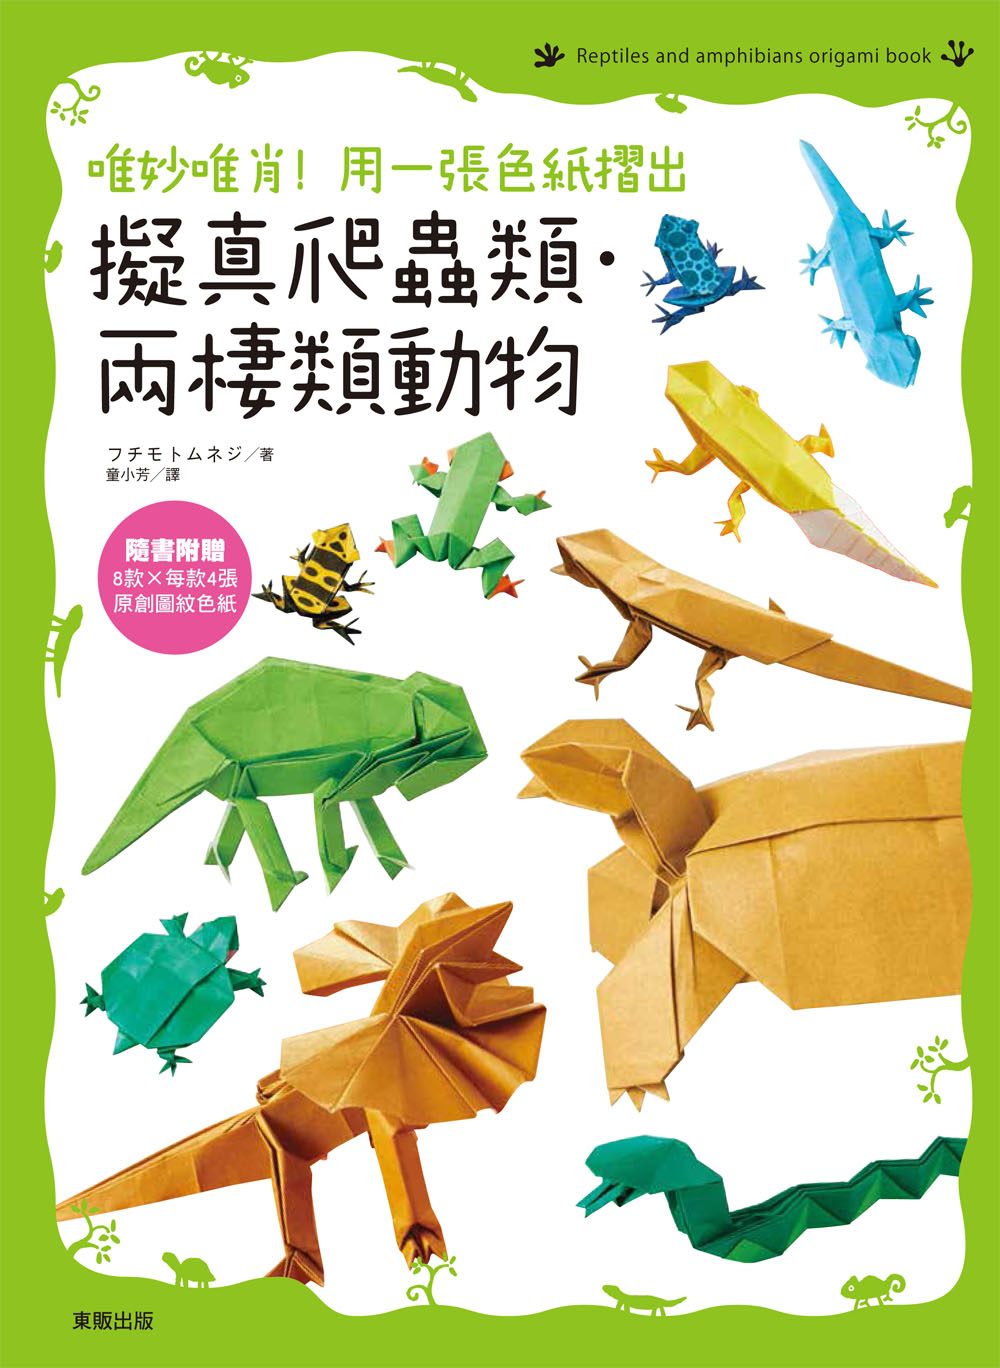 唯妙唯肖！用一張色紙摺出擬真爬蟲類、兩棲類動物